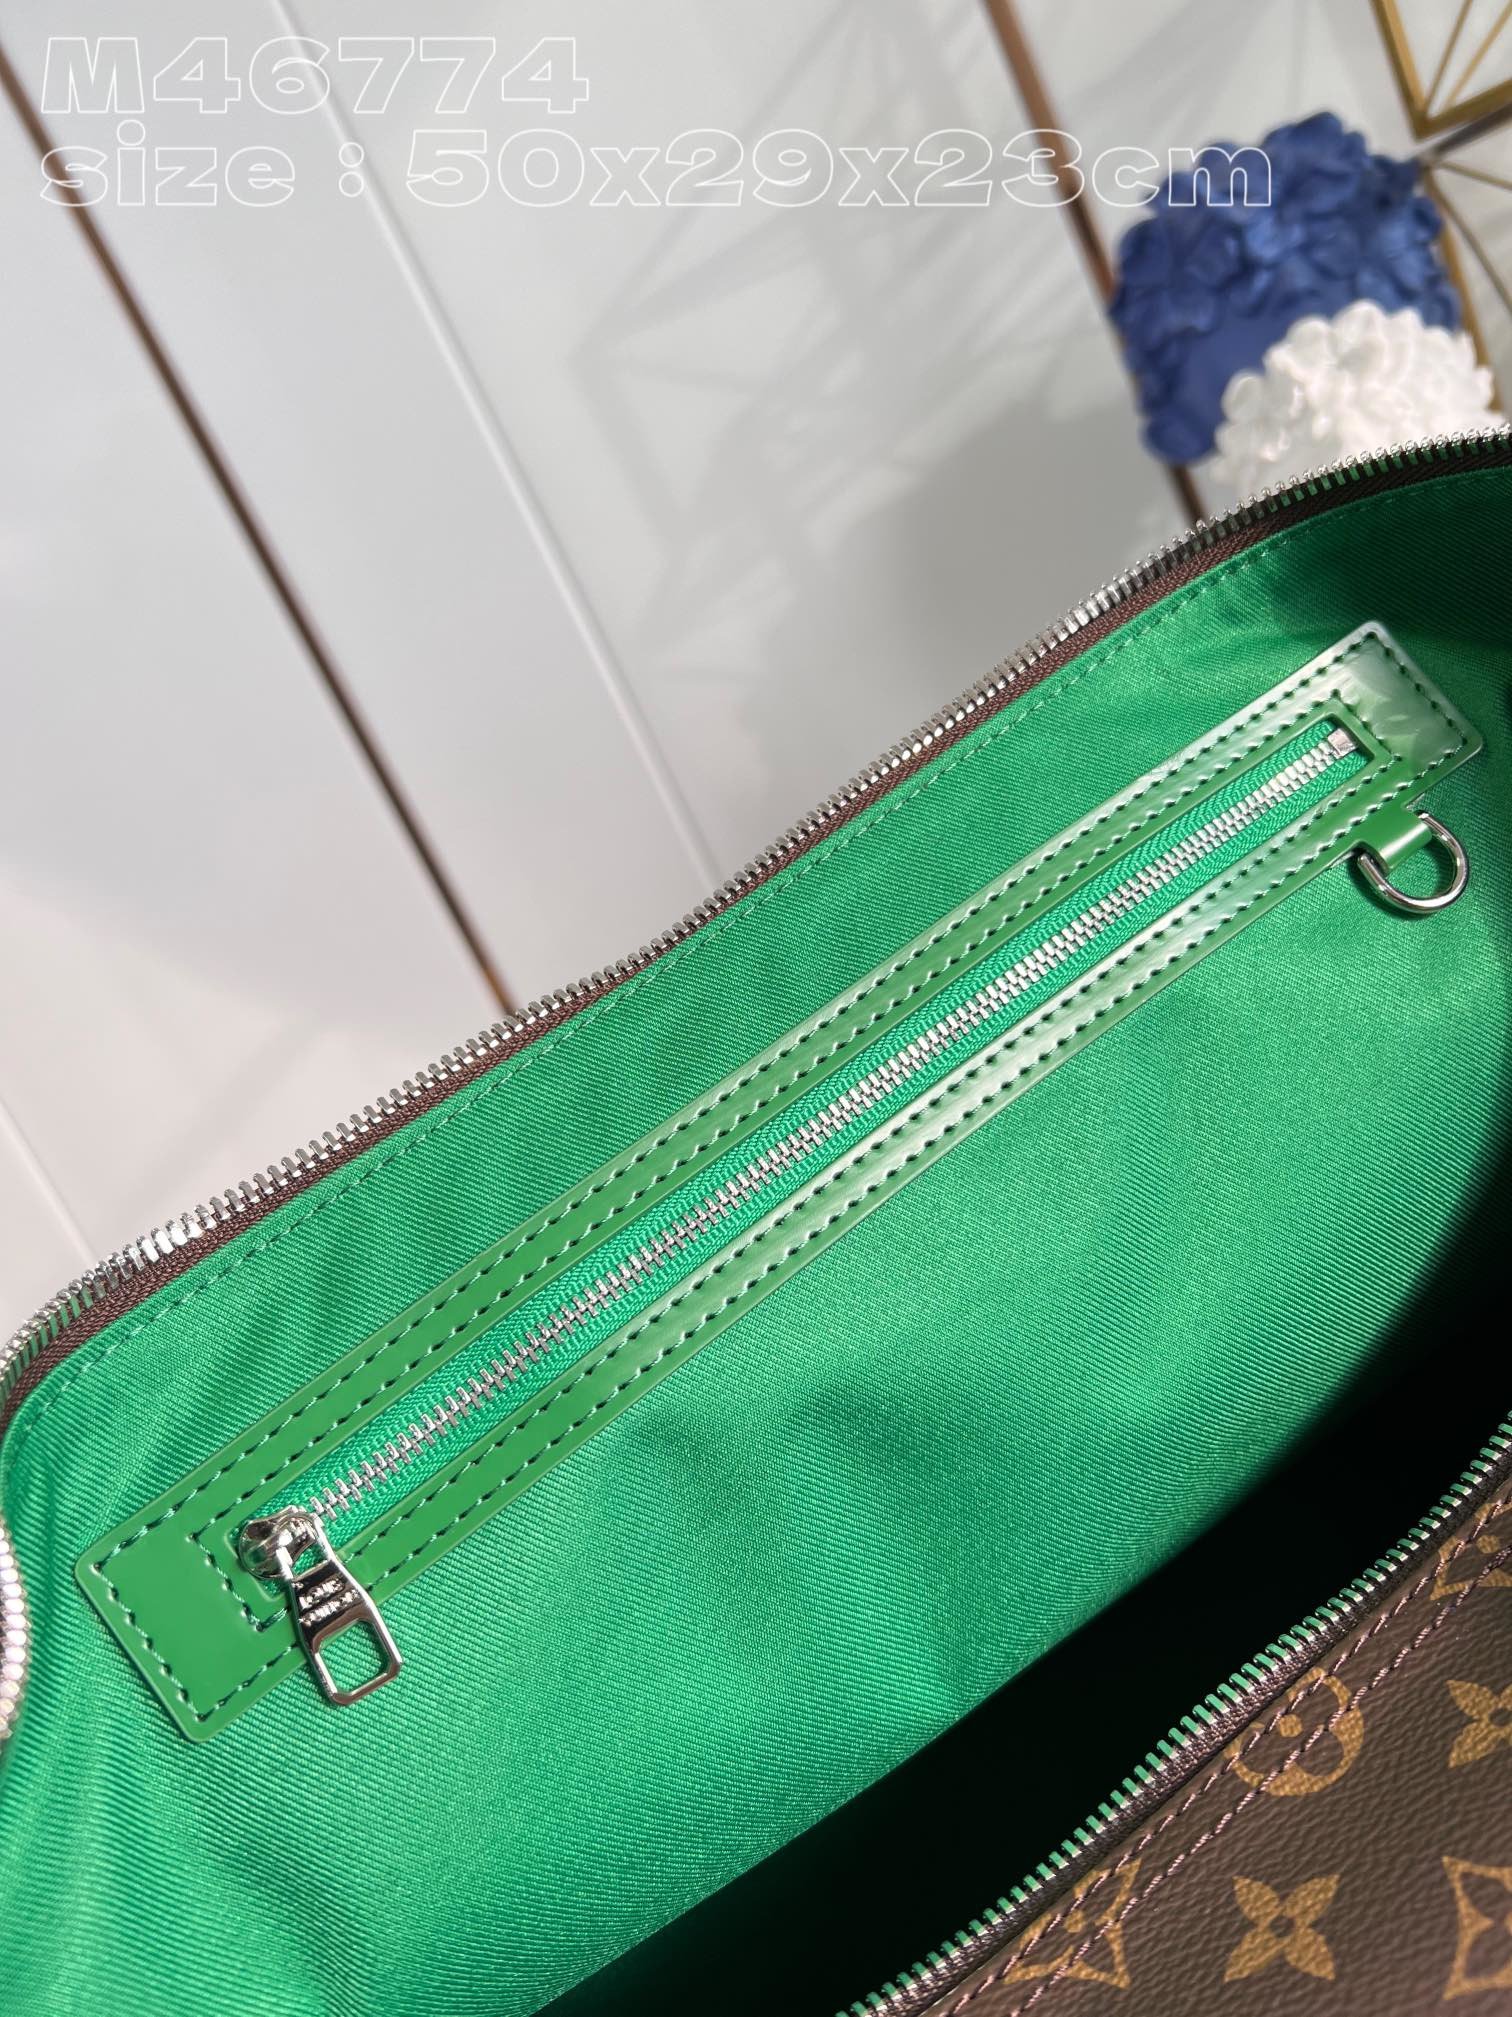 顶级原单MM46774绿本款KeepallBandoulière50旅行袋选用MonogramMacas